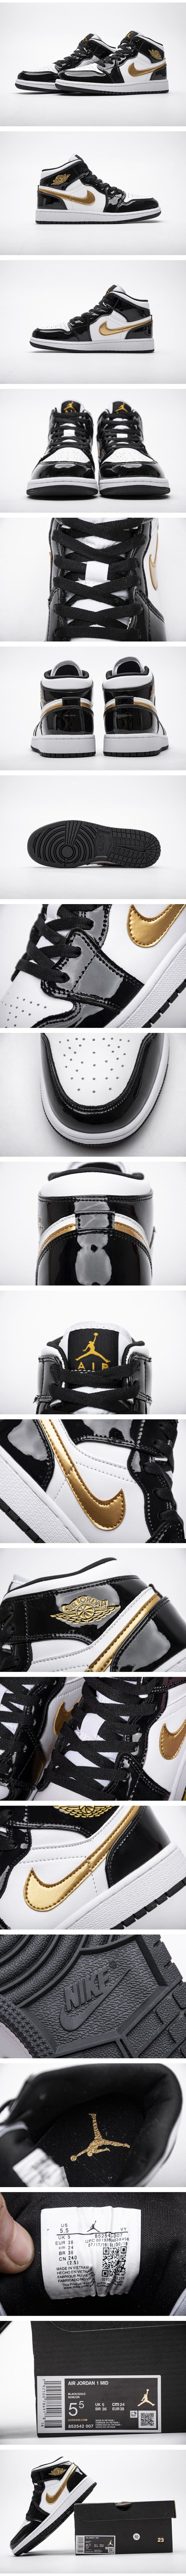 Nike Air Jordan 1 Mid Black Gold Patent Leather 852542007 ナイキ エア ジョーダン1 ミッド ブラック ゴールド パテントレザー